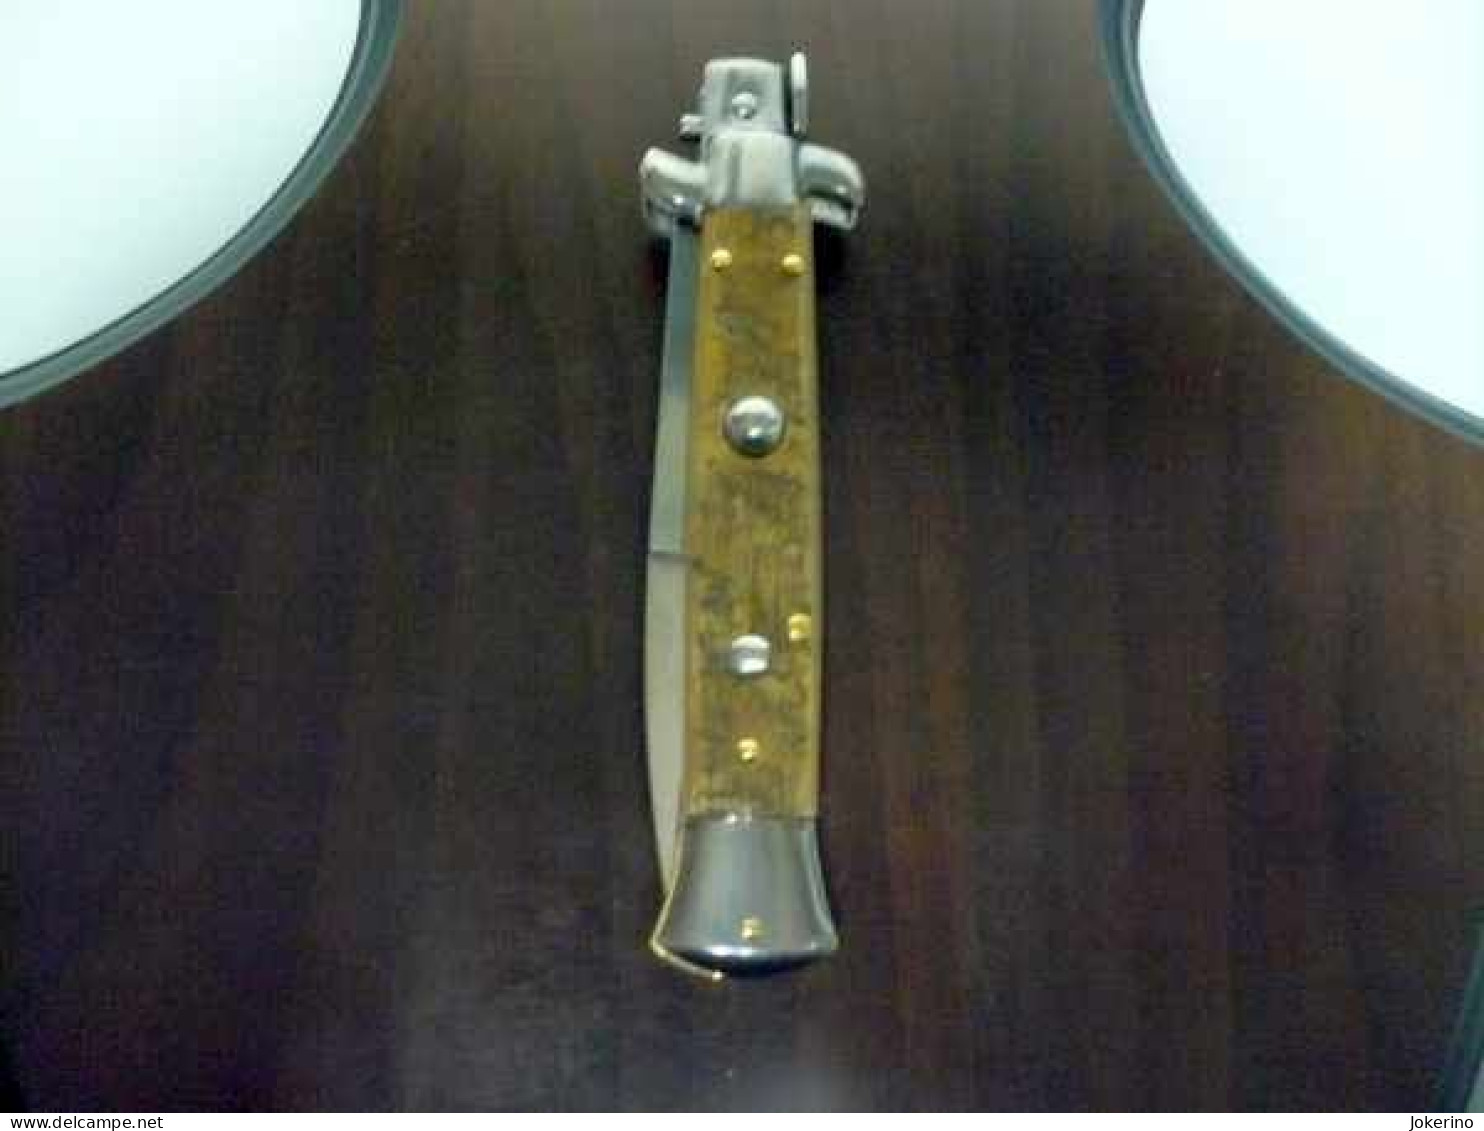 KNIFE-italian stiletto-Maniago -Frank Beltrame-23cm- corno pregiato di ariete bicolore Modello FB 23/63B - NOVITA'